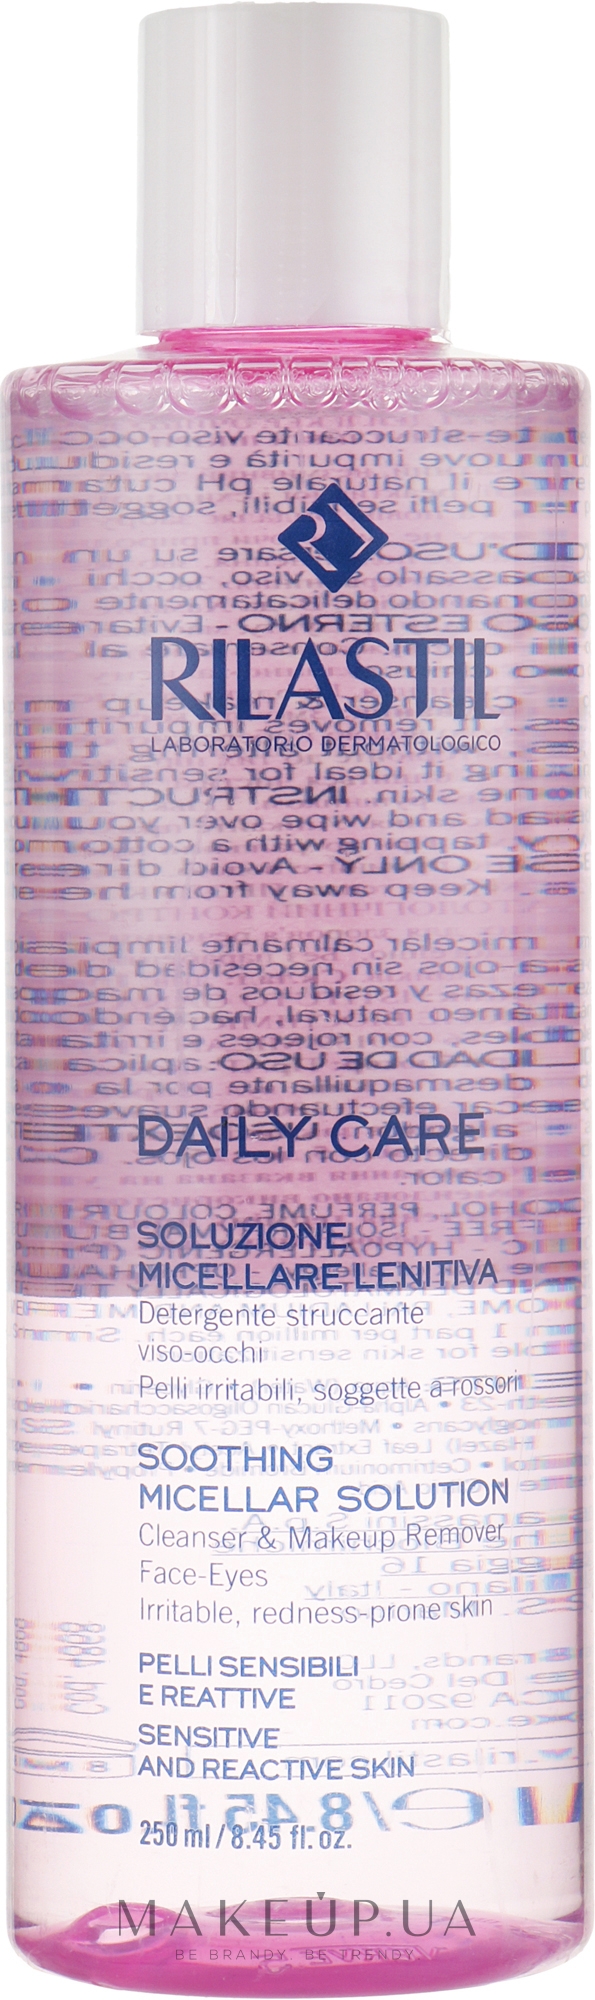 Очищувальна міцелярна вода для чутливої шкіри обличчя й очей - Rilastil Daily Care Soluzione Micellare Lenitiva — фото 250ml